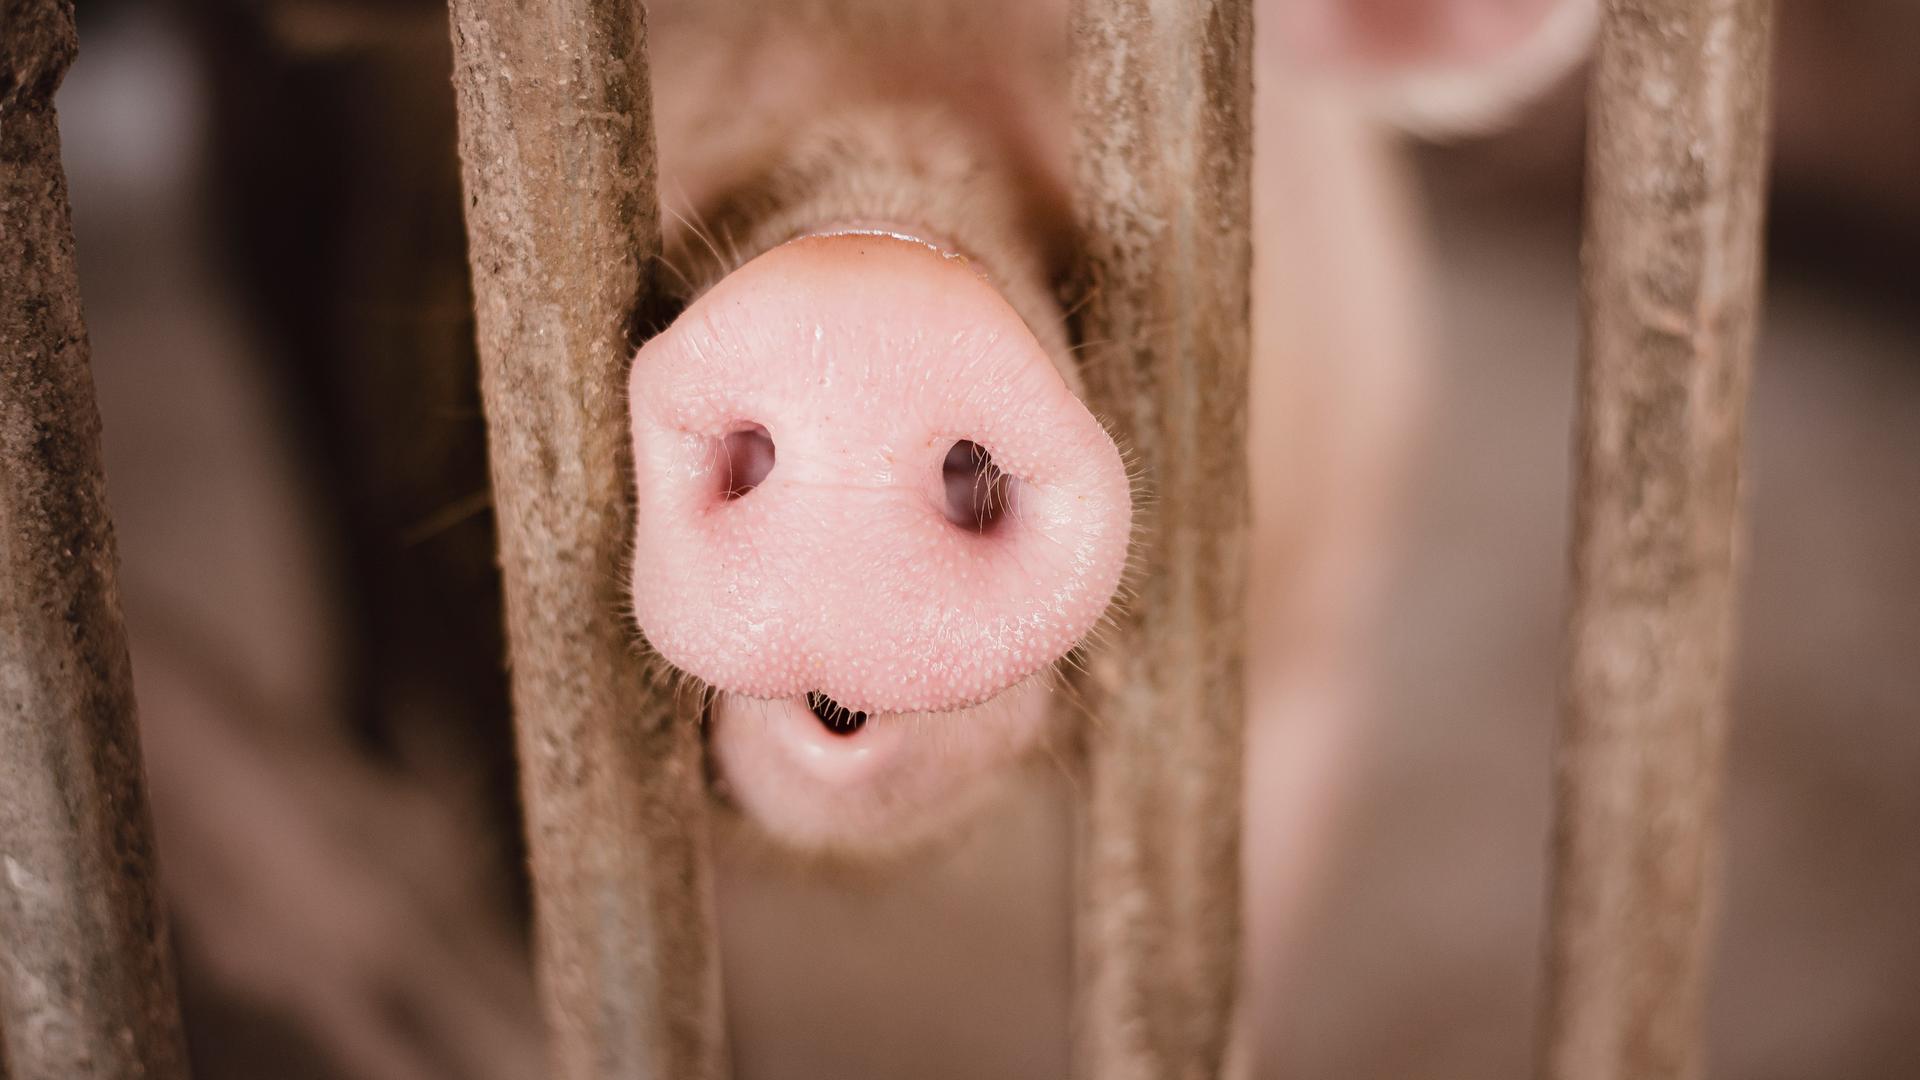 Nahaufnahme eines Schweins, das seine Nase durch zwei Gitterstäbe schiebt.